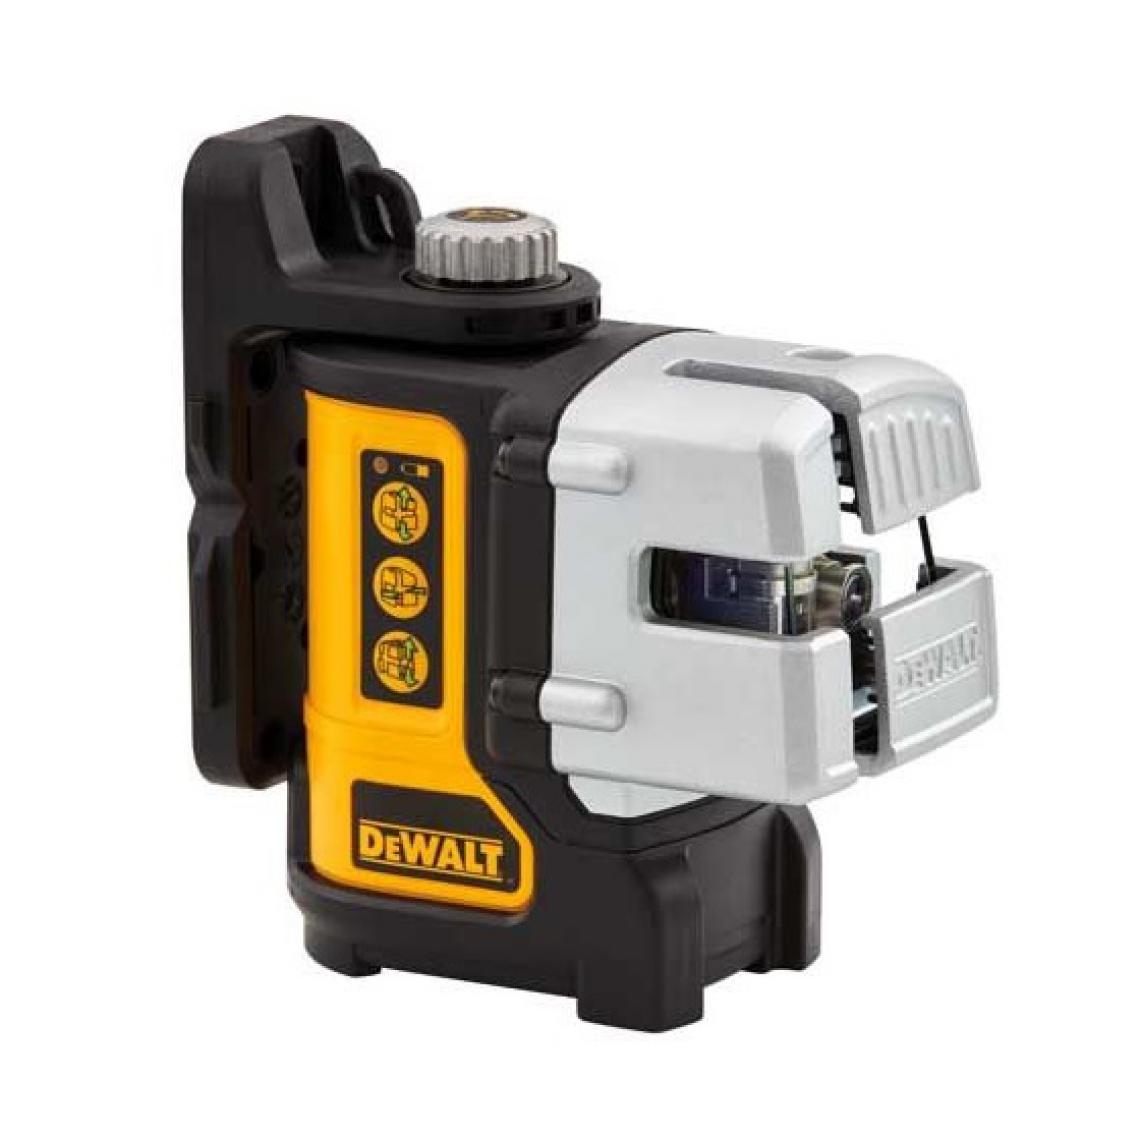 Dewalt - DeWalt - Niveau laser auto-nivellant ligne verte - DW089CG - Niveaux lasers